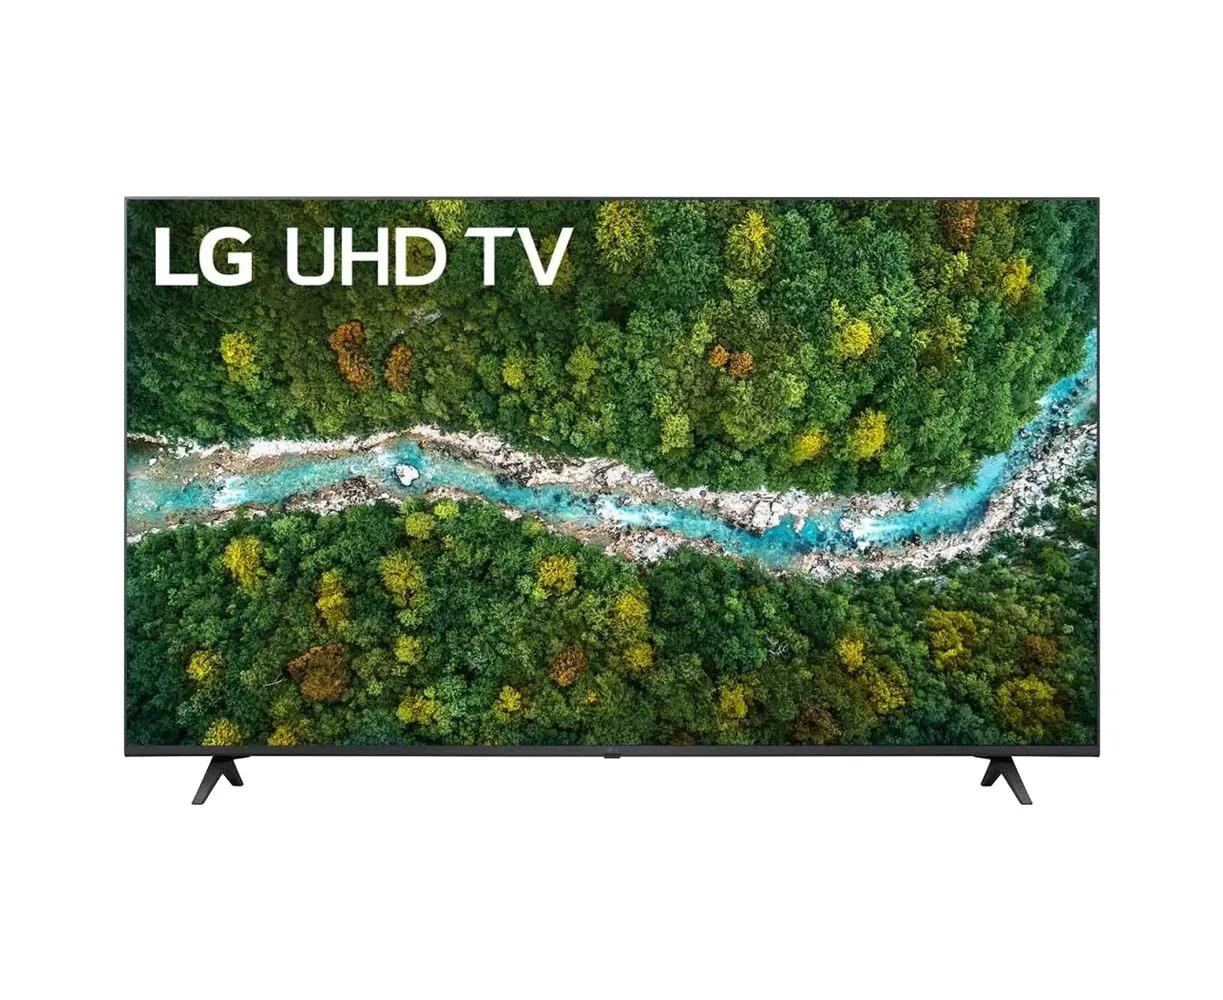 Телевизор LG 50UP77006